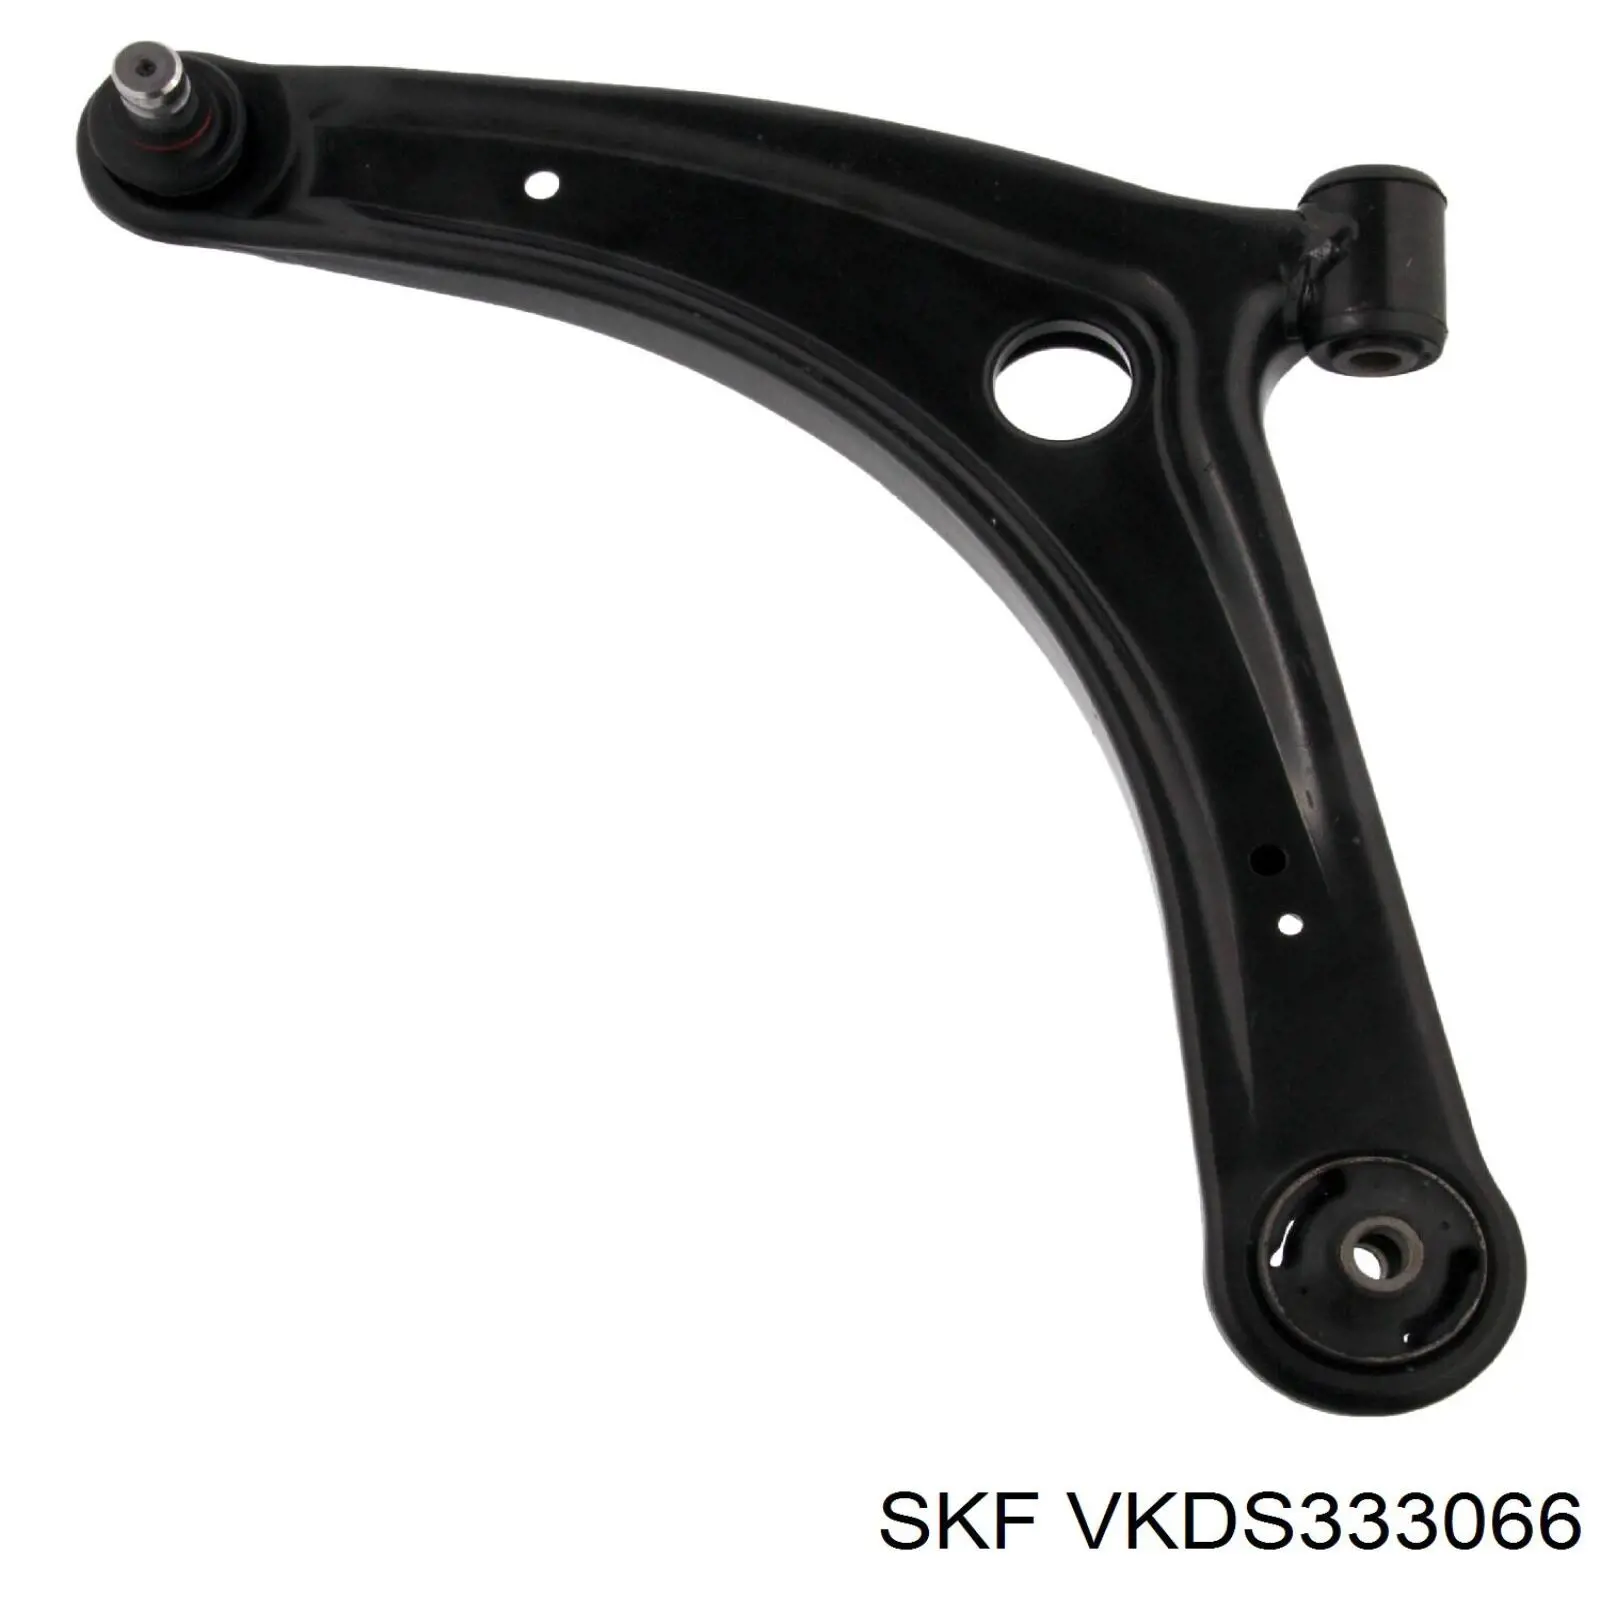 VKDS333066 SKF silentblock de suspensión delantero inferior